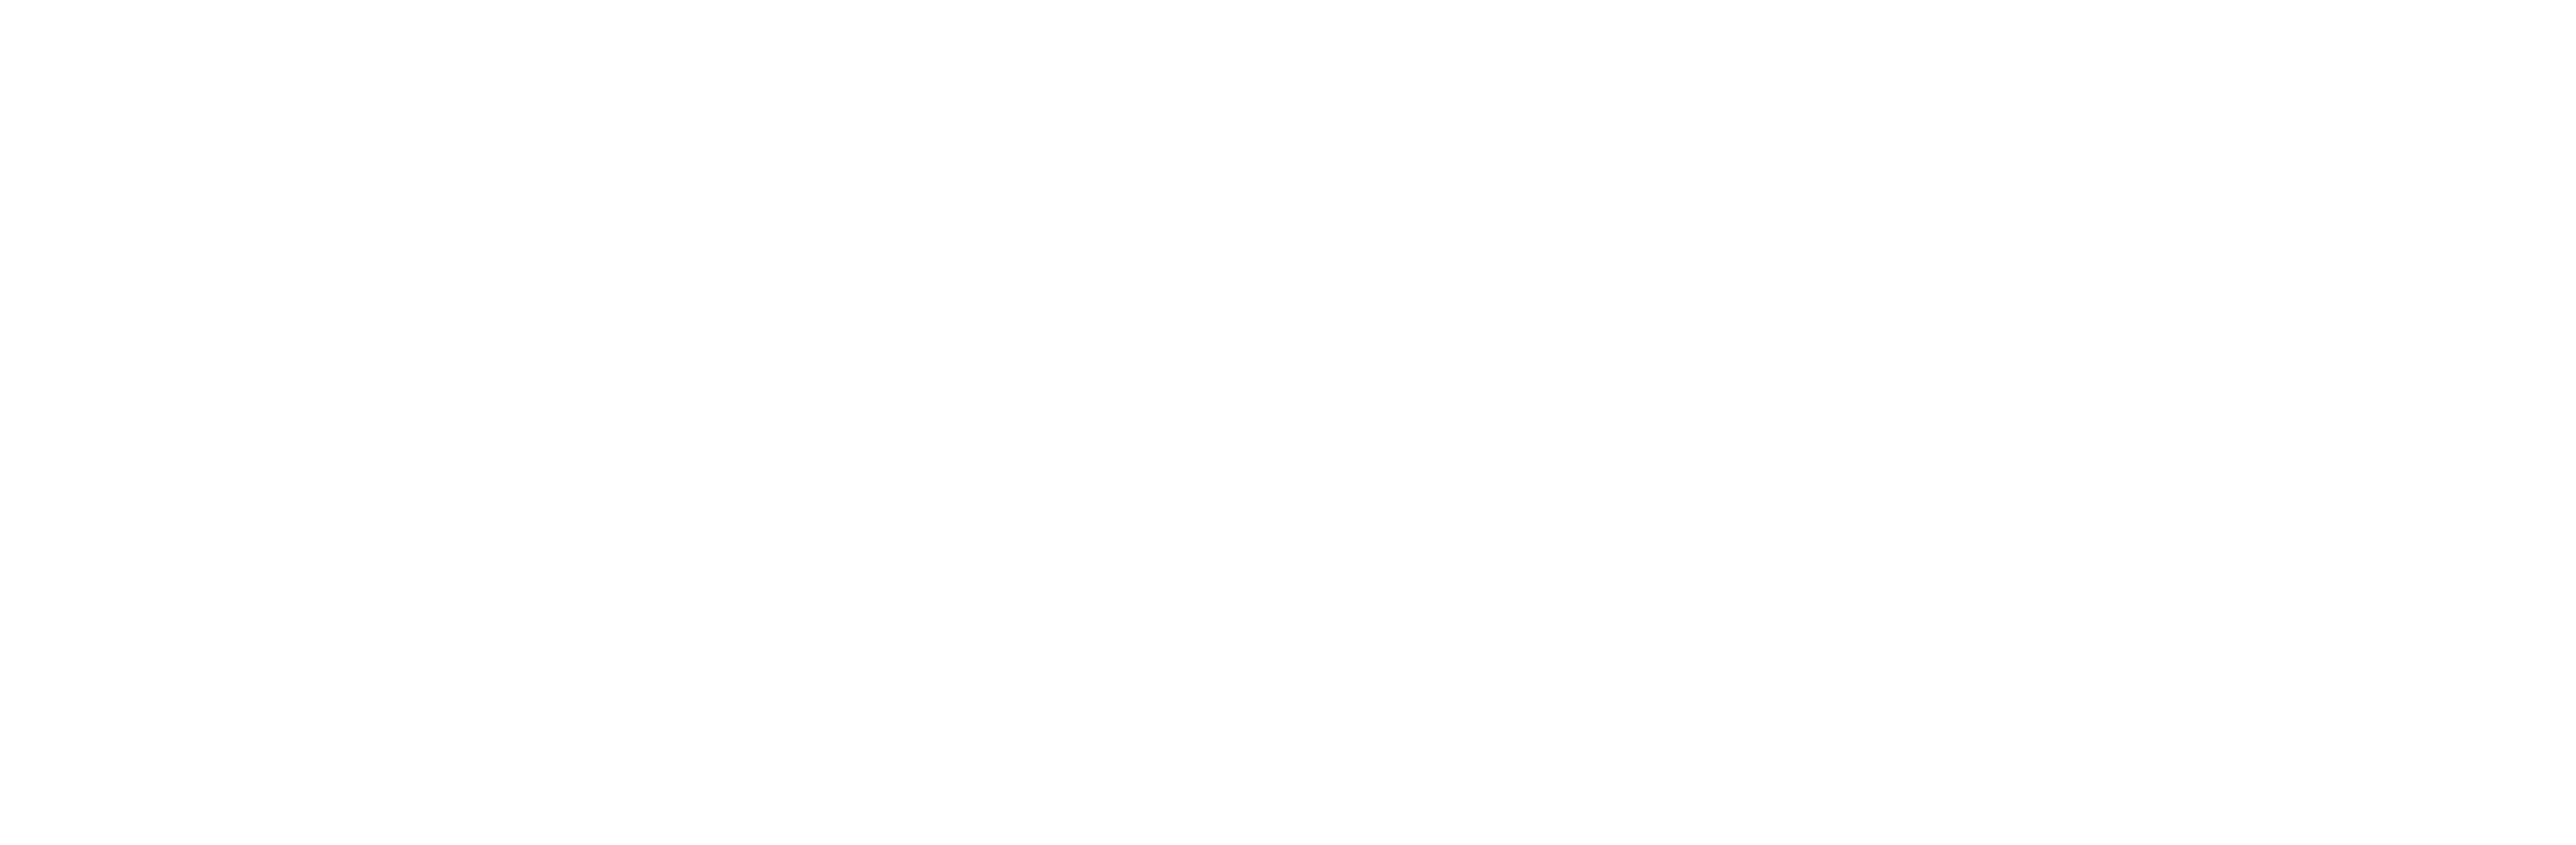 Logotipo do programa de fidelidade Accor